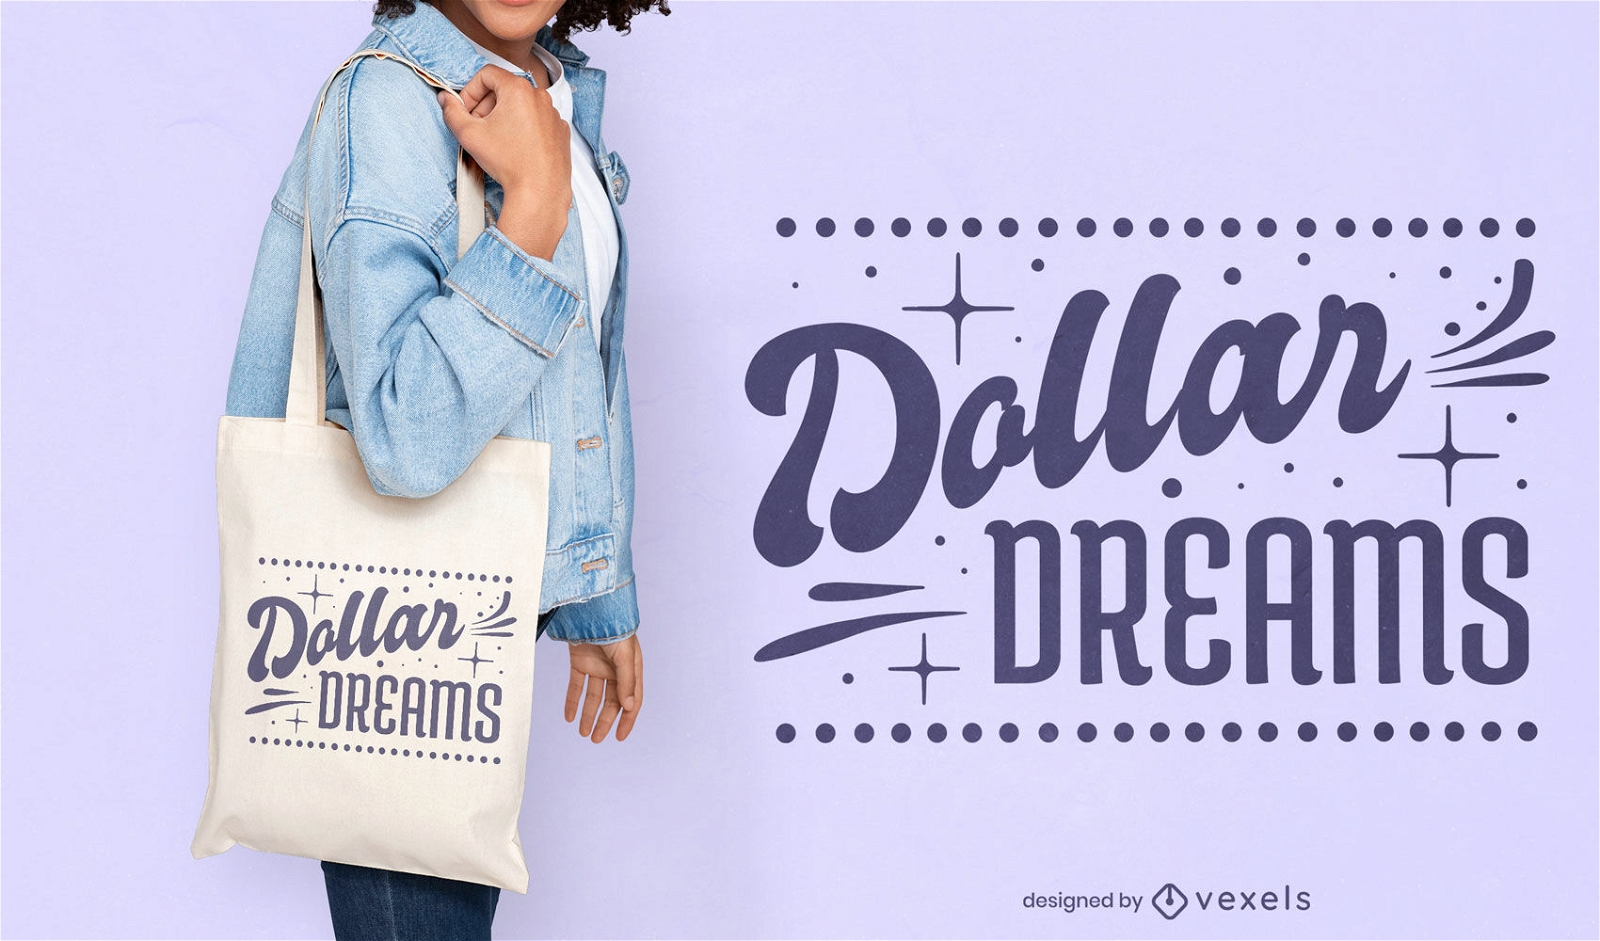 Dollar-Träume-Zitat-Einkaufstaschendesign